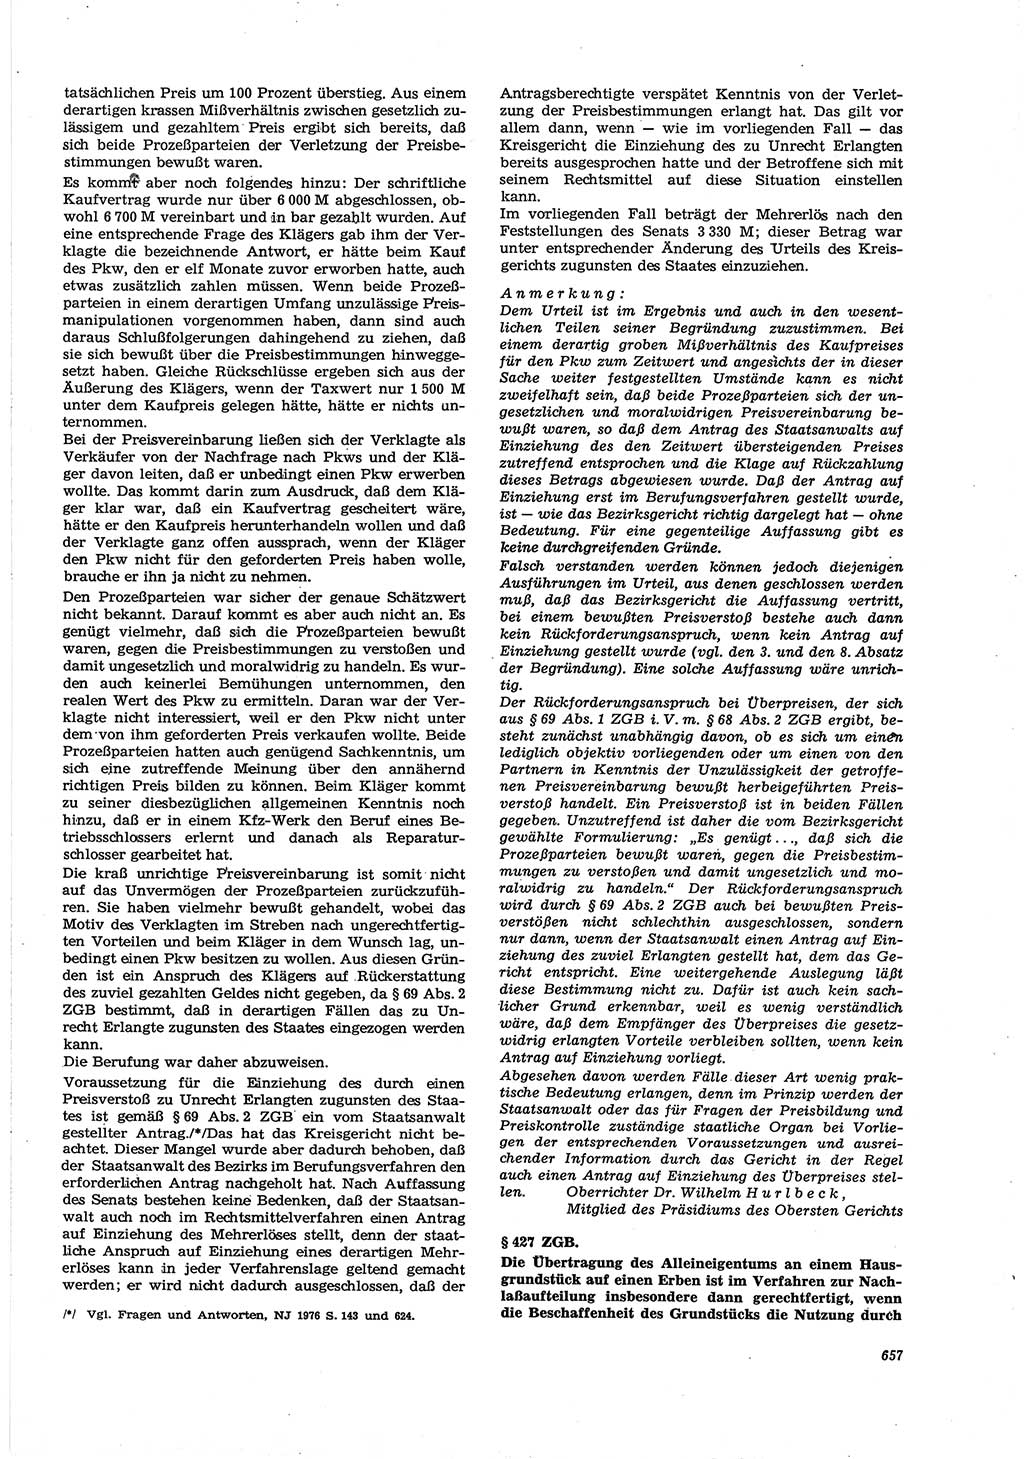 Neue Justiz (NJ), Zeitschrift für Recht und Rechtswissenschaft [Deutsche Demokratische Republik (DDR)], 30. Jahrgang 1976, Seite 657 (NJ DDR 1976, S. 657)